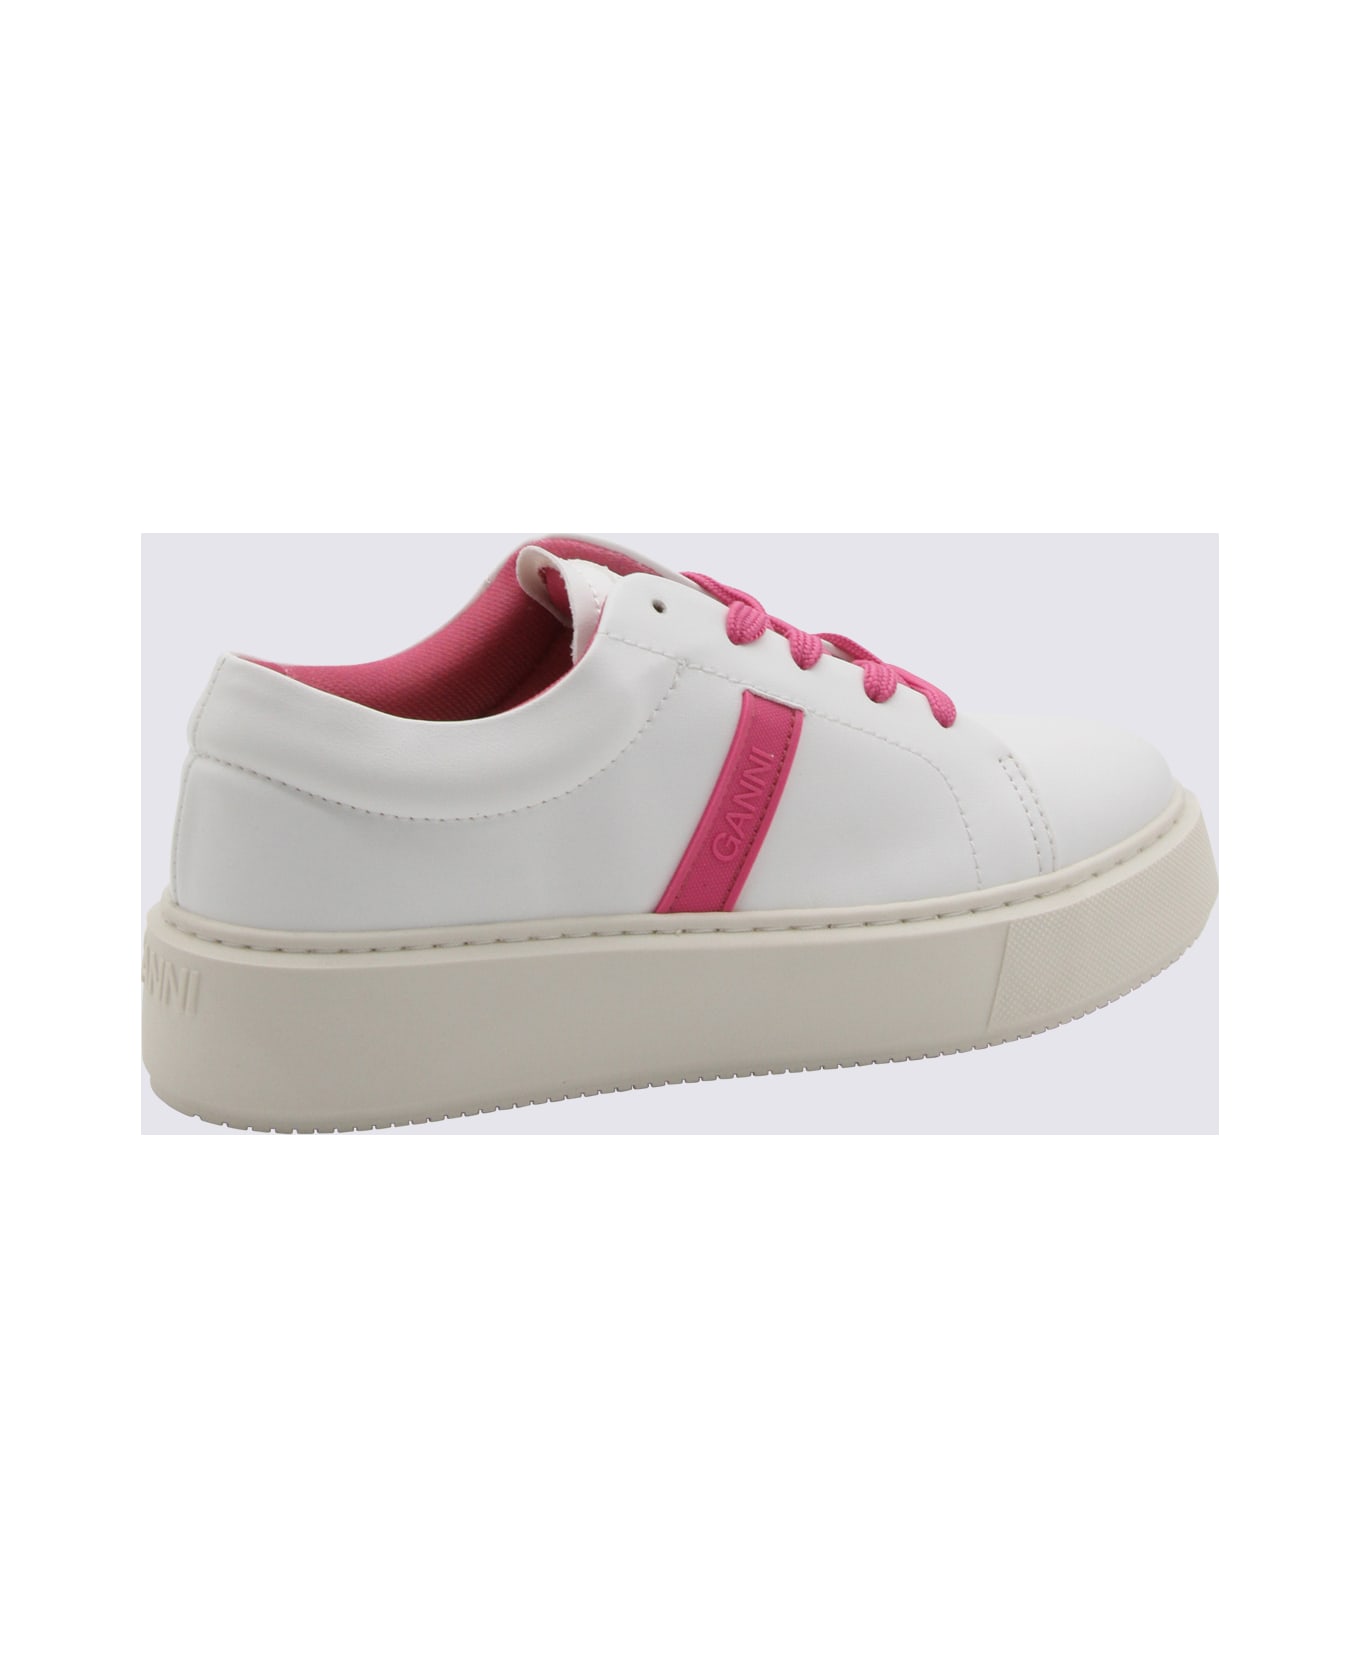 Ganni Shoking Pink Low Top Sneakers - shoking pink